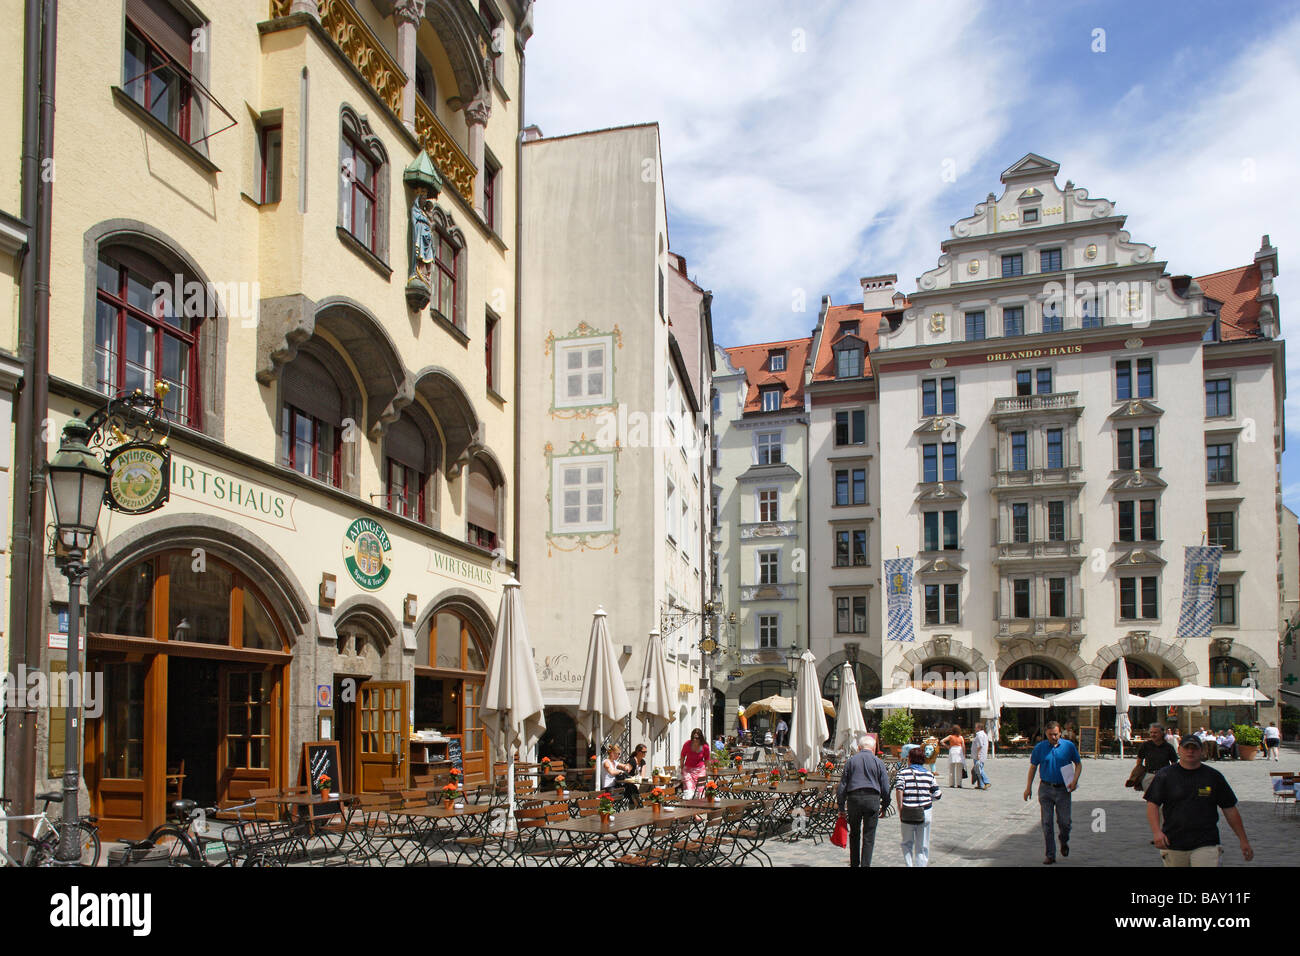 Menschen bei der quadratischen Platzl vor Orlandohaus, München, Bayern, Deutschland Stockfoto